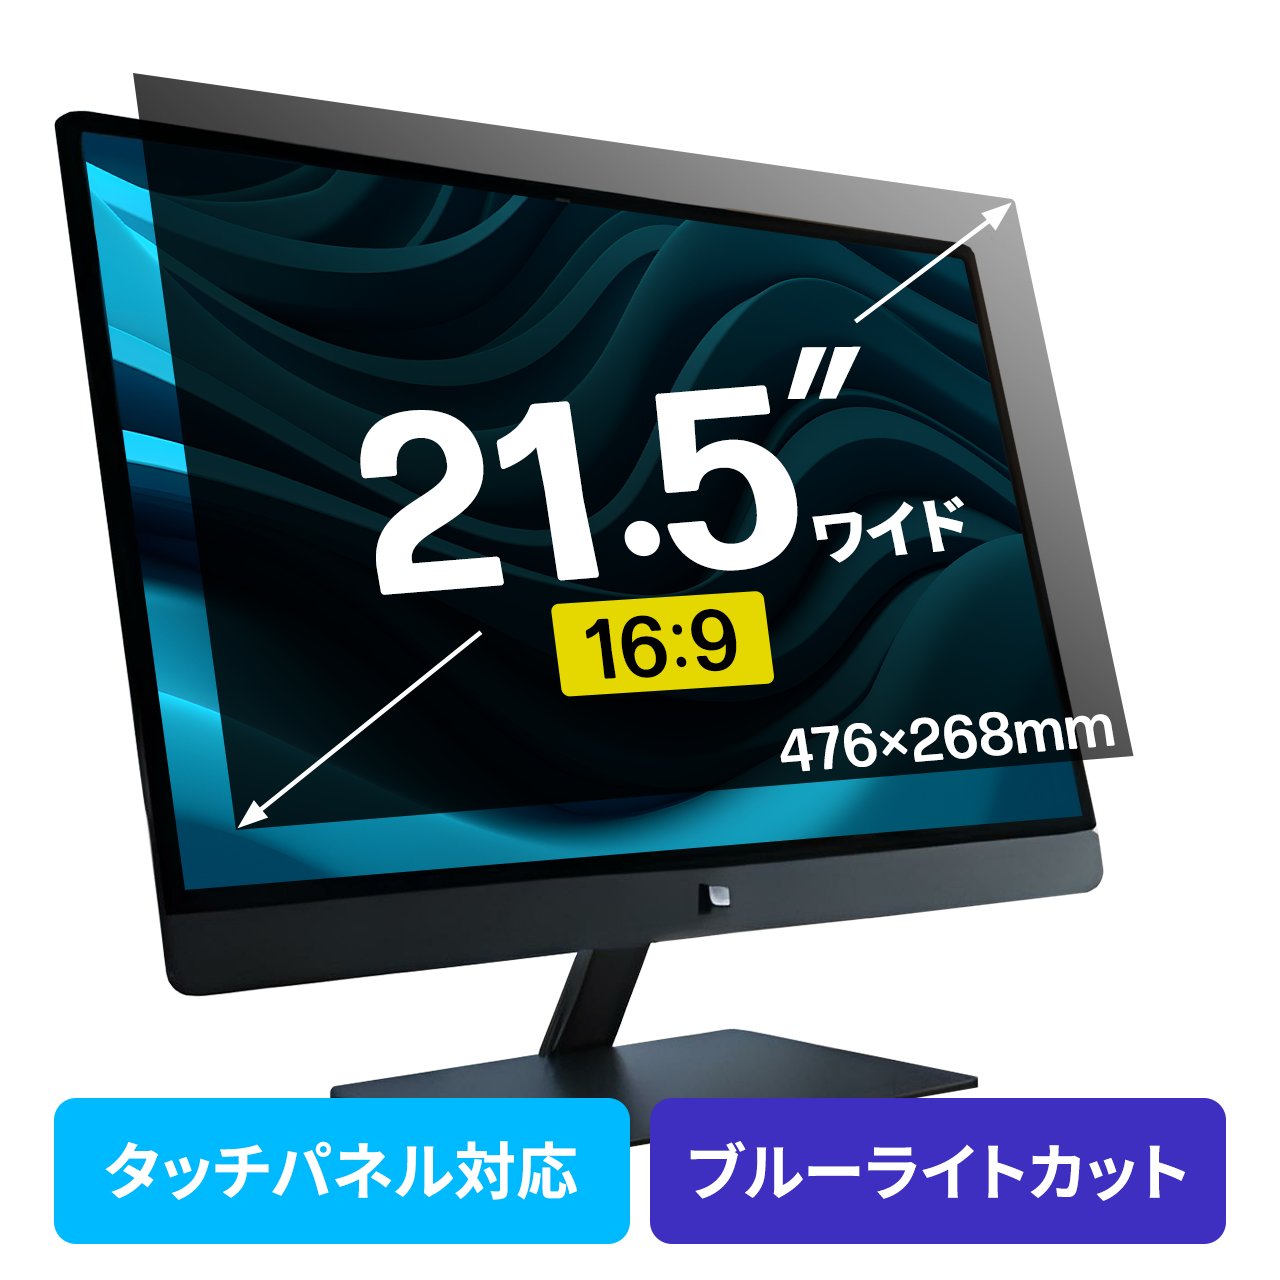 純正品特価【値下〜12/6】21年FHD 24インチテレビ HDMIモニタ 反射防止 